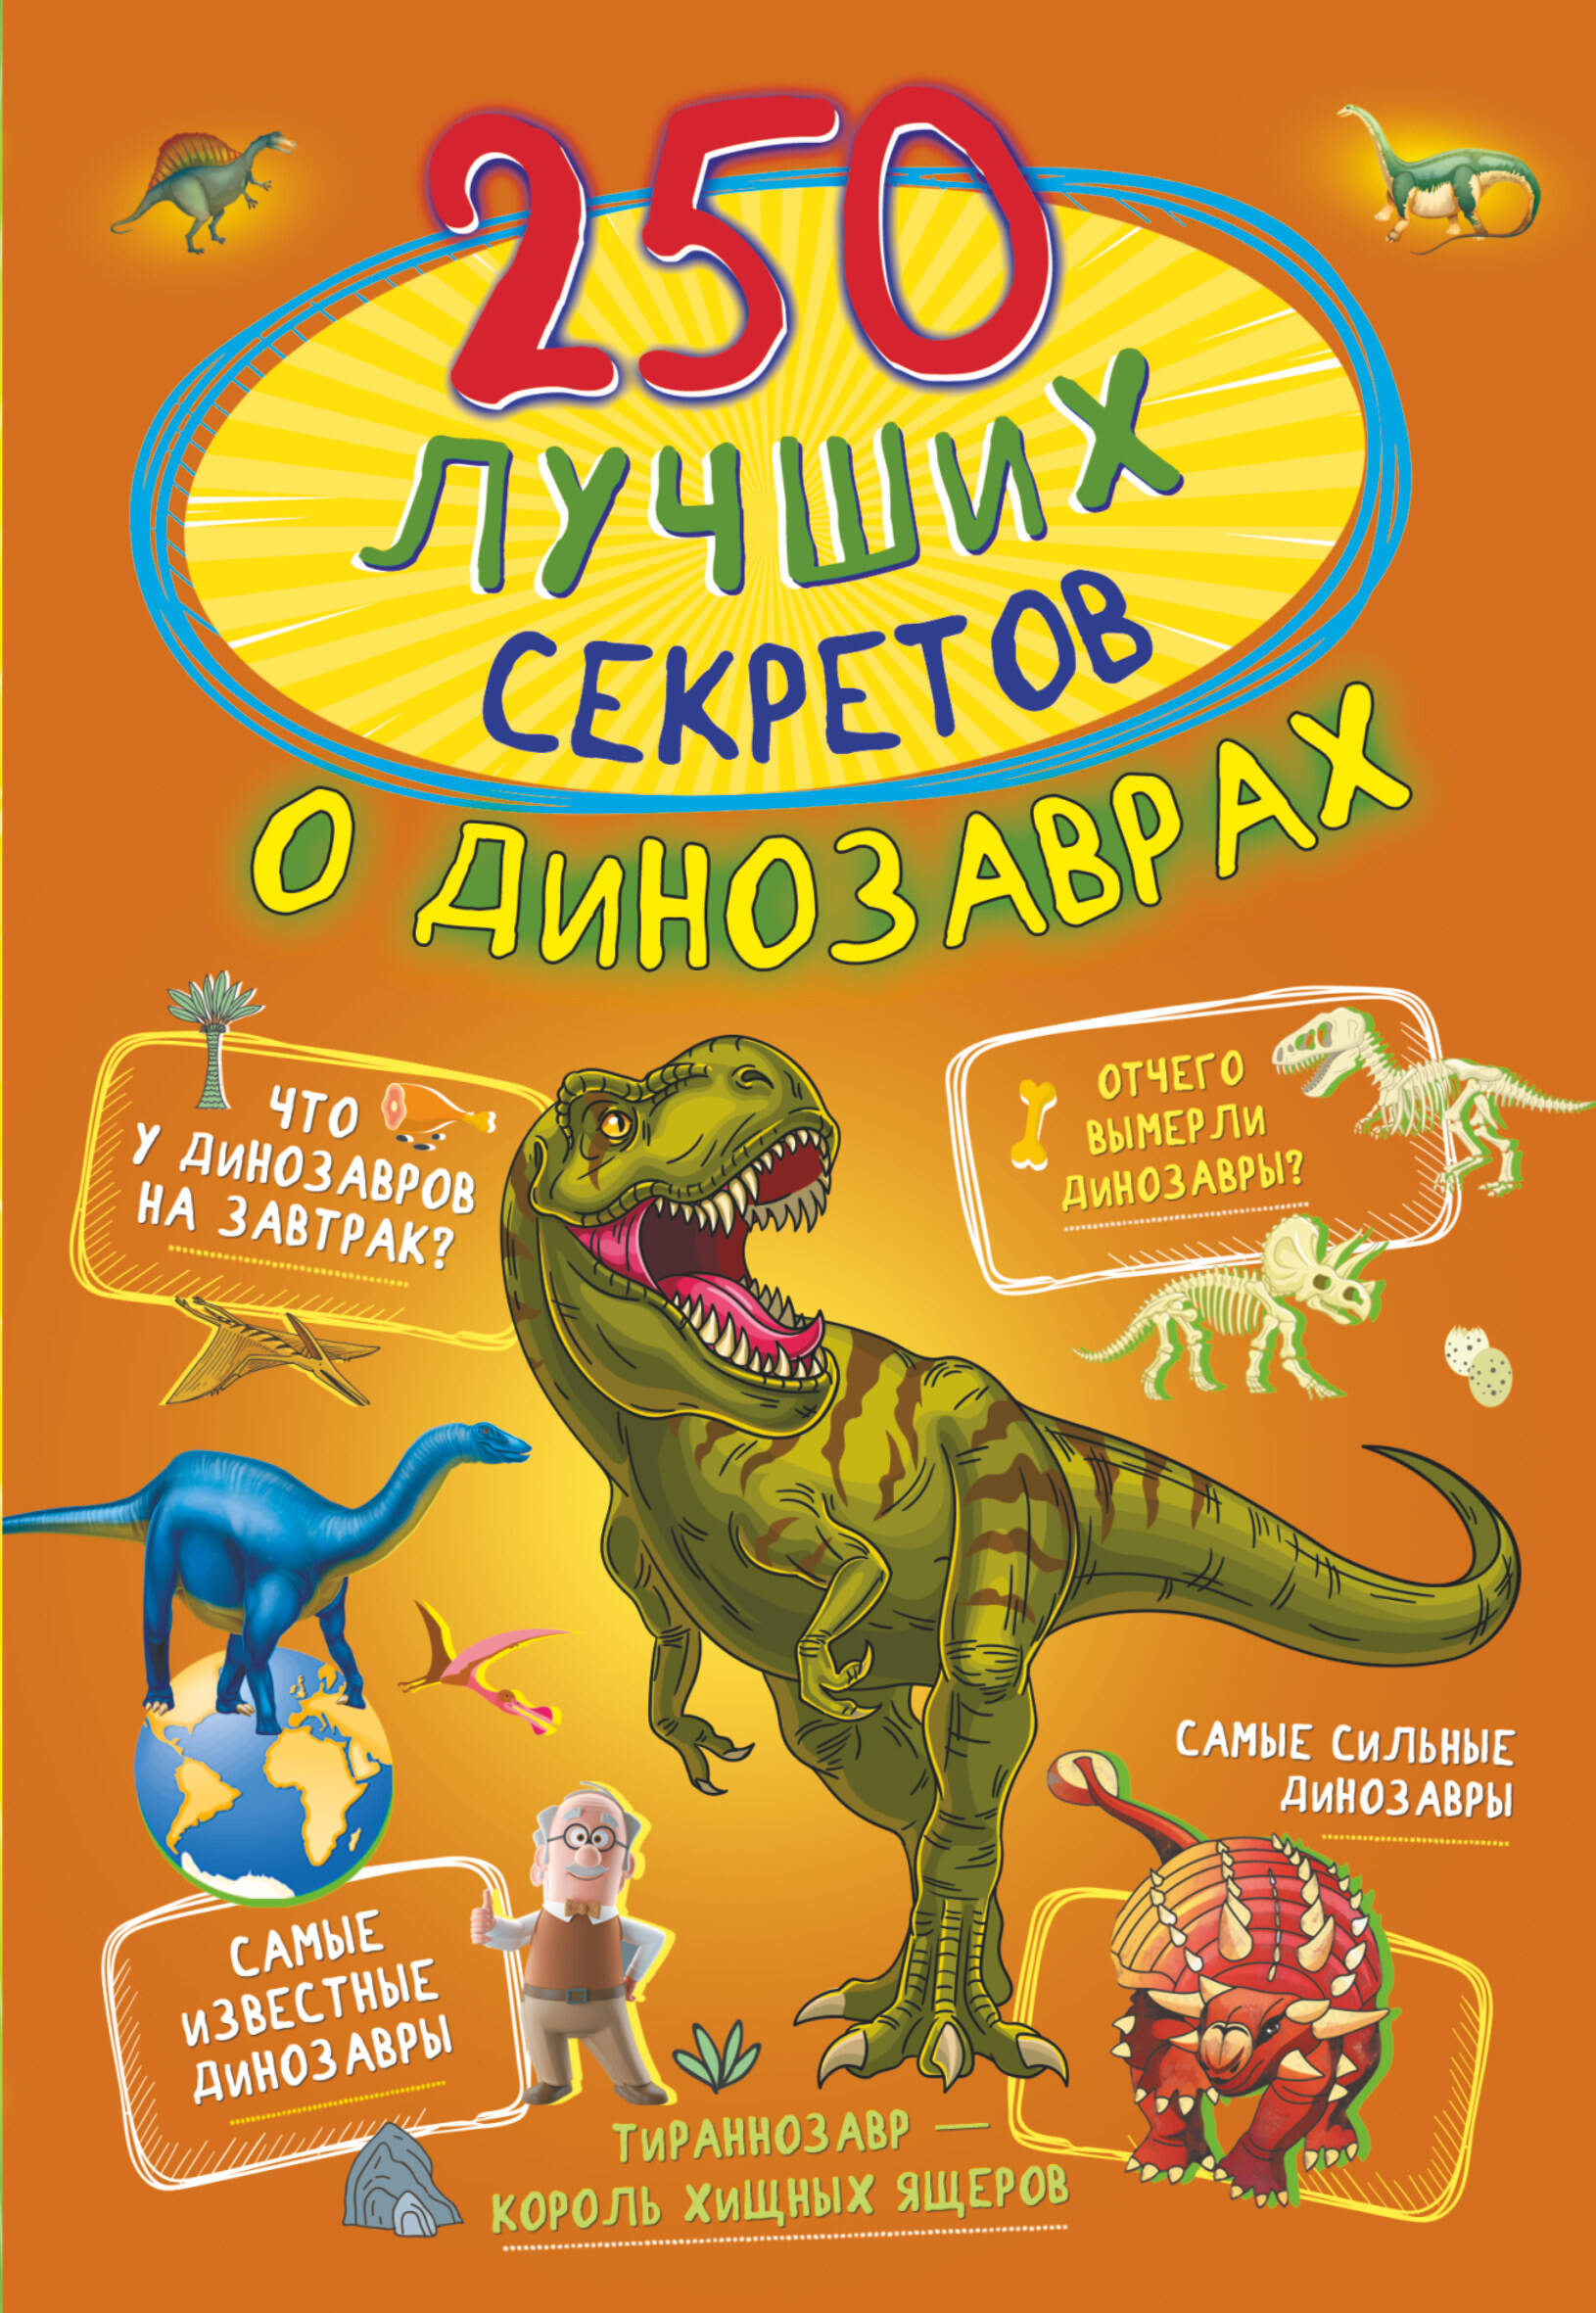  250 лучших секретов о динозаврах - страница 0